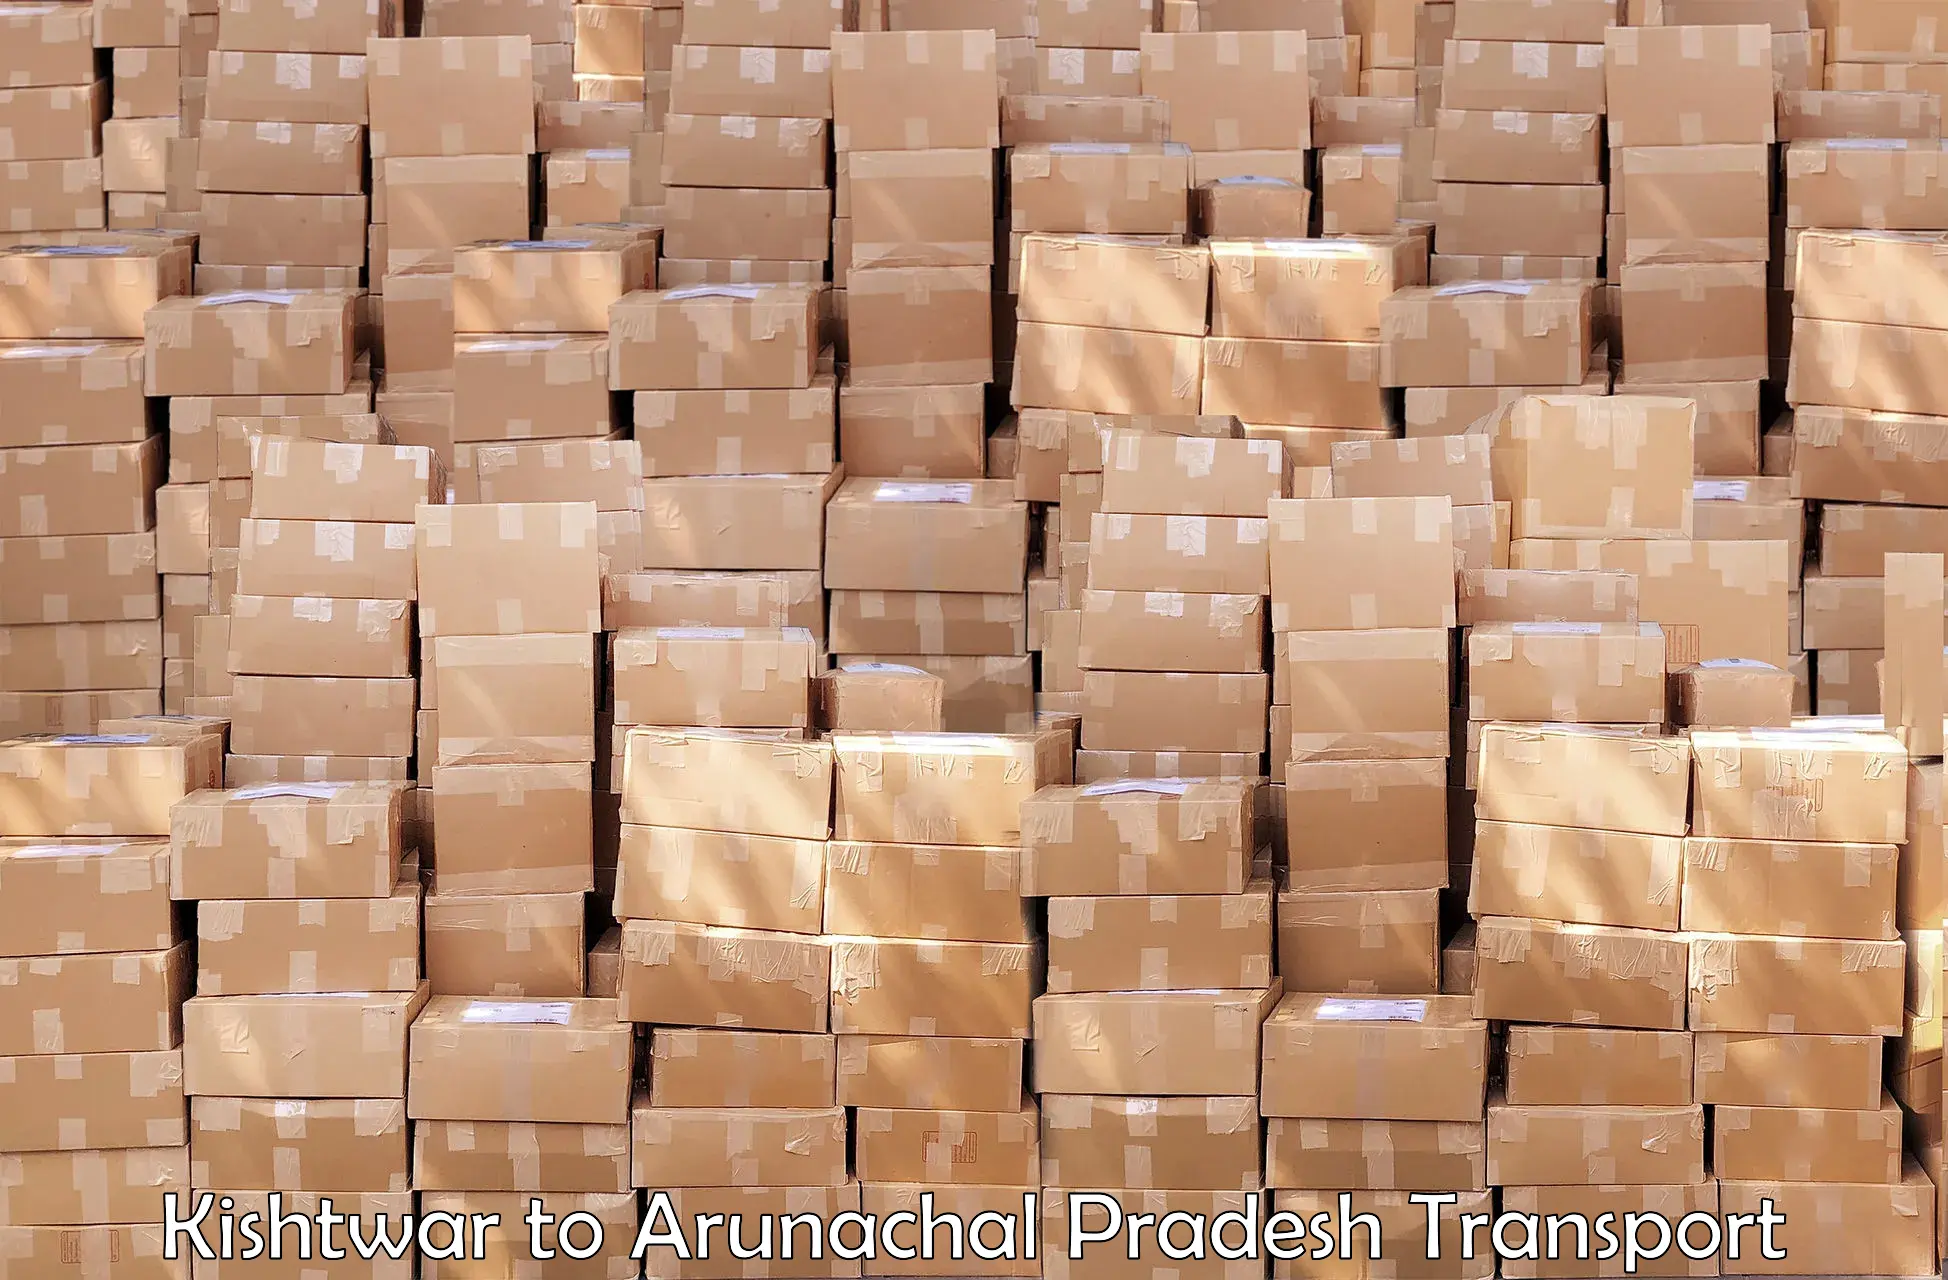 Part load transport service in India Kishtwar to Tezu